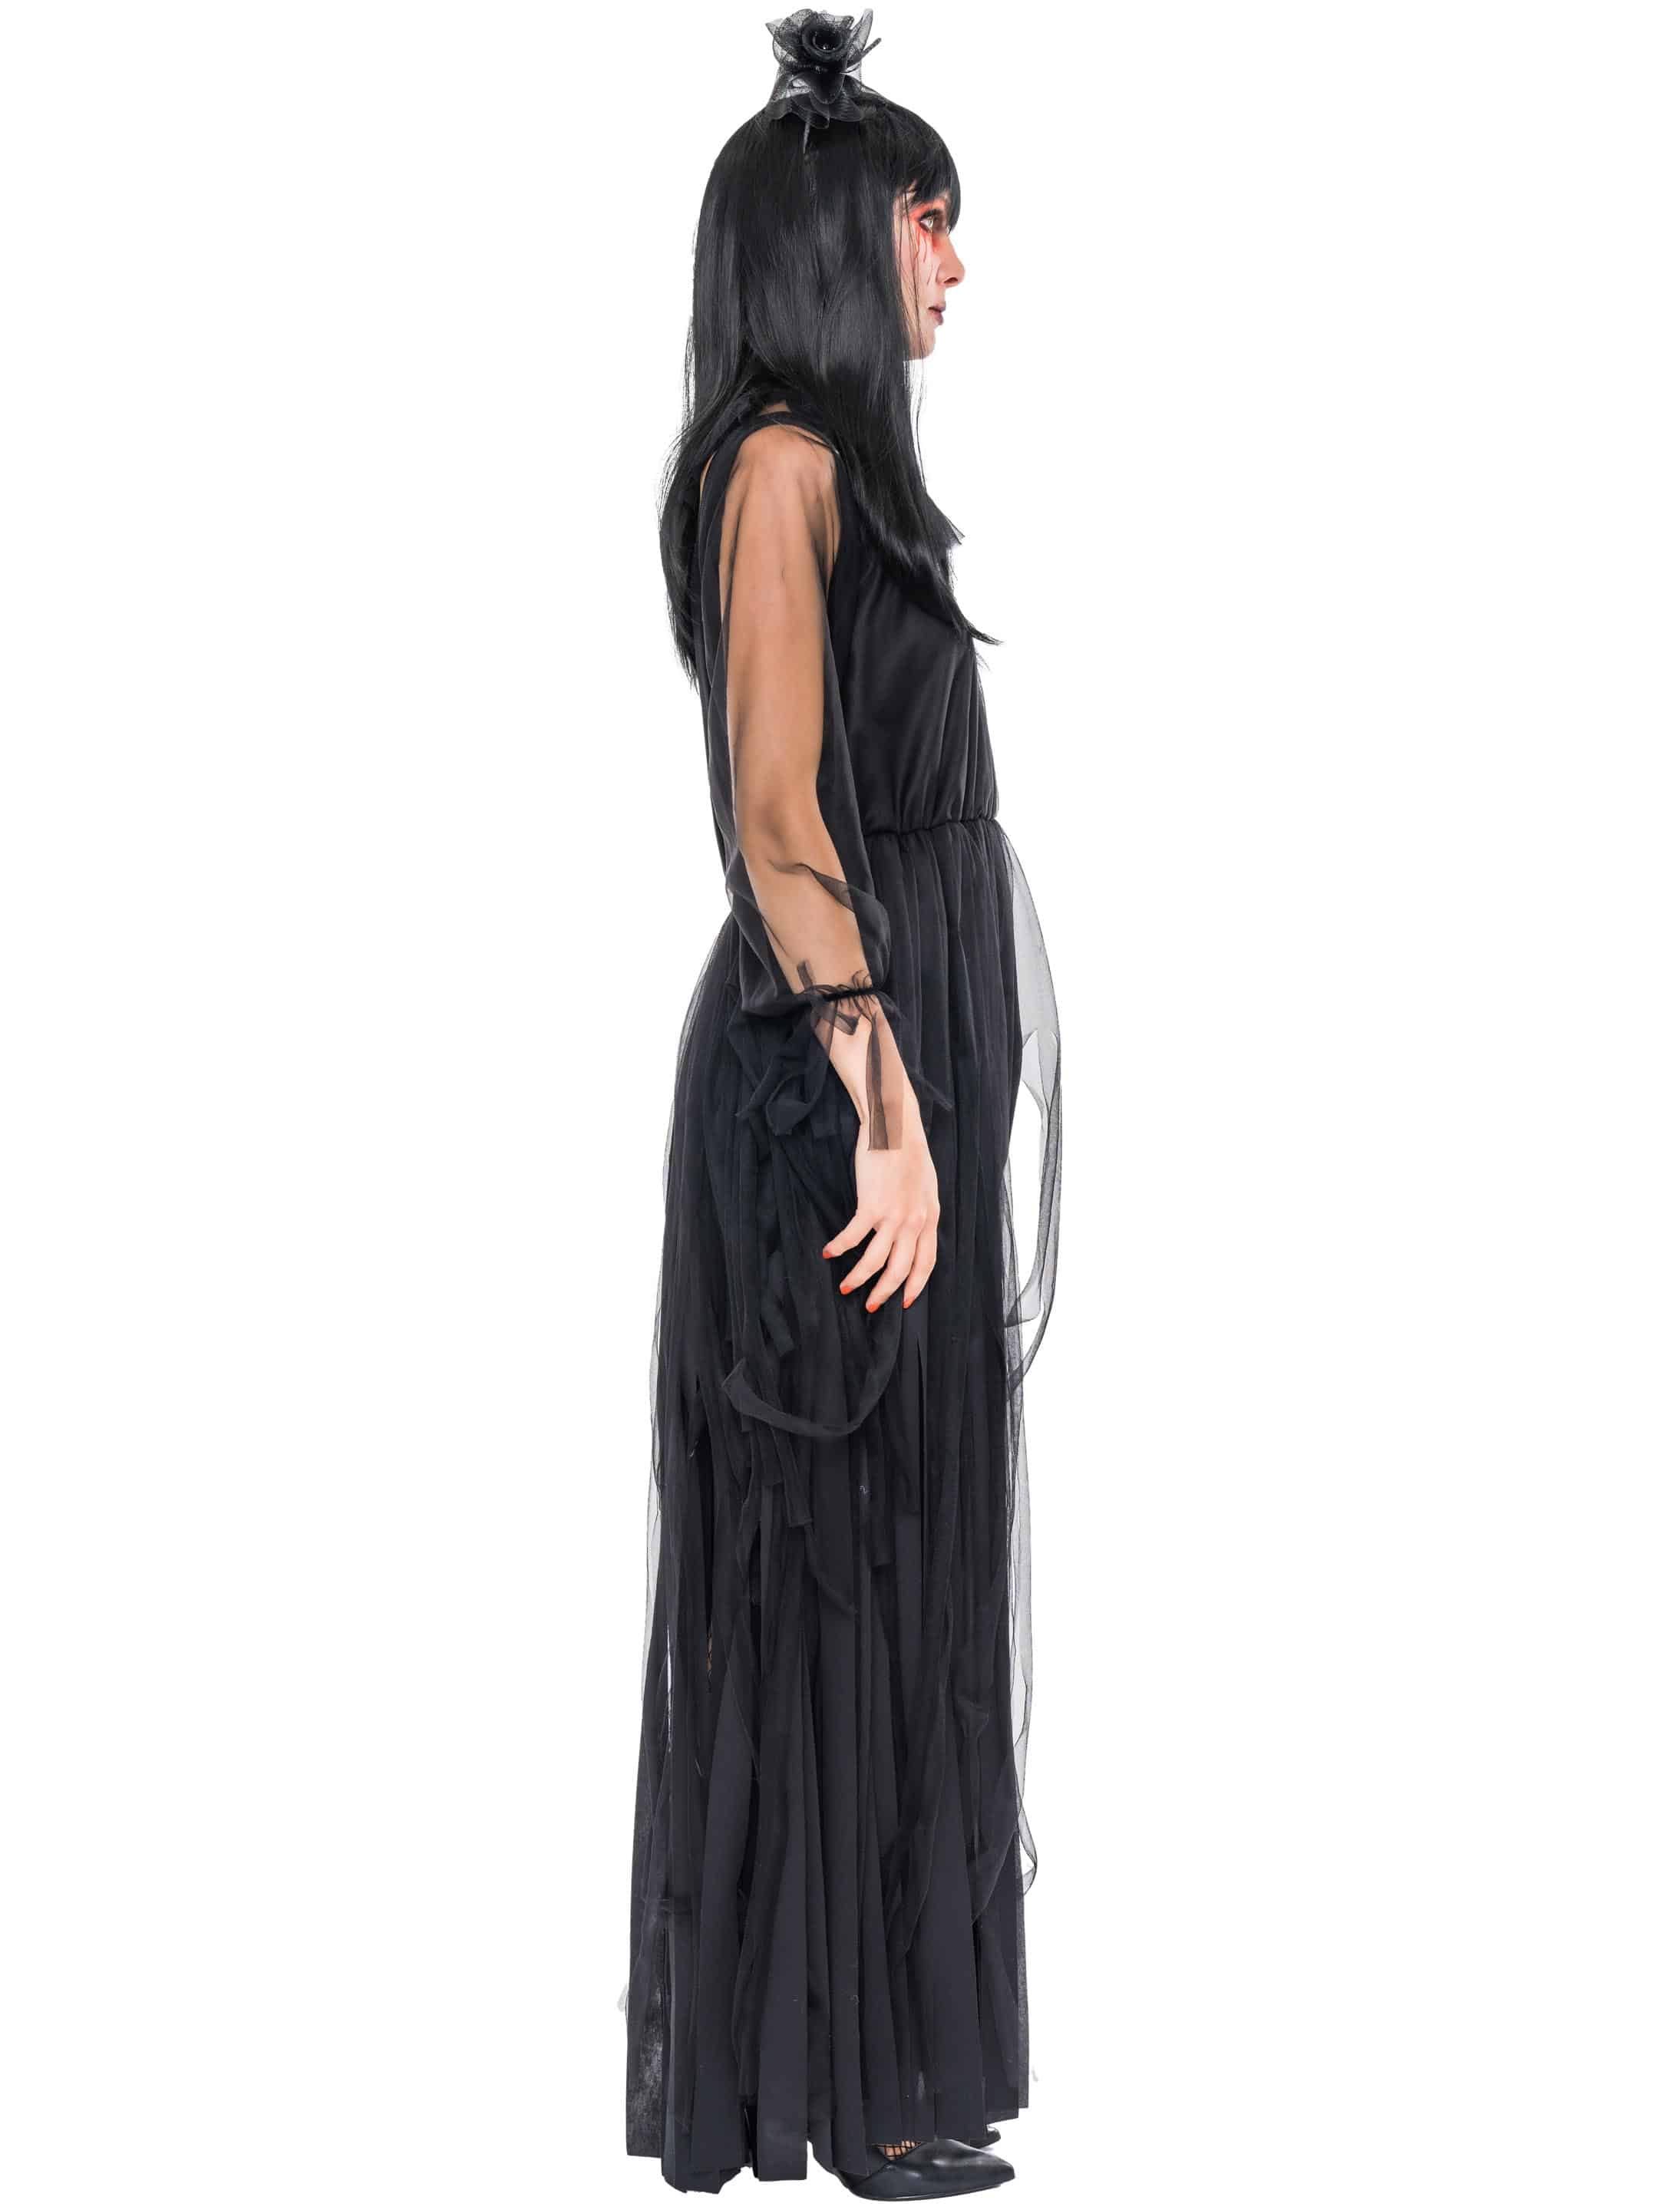 Kleid mit Tüllfransen Damen schwarz 2XL/3XL